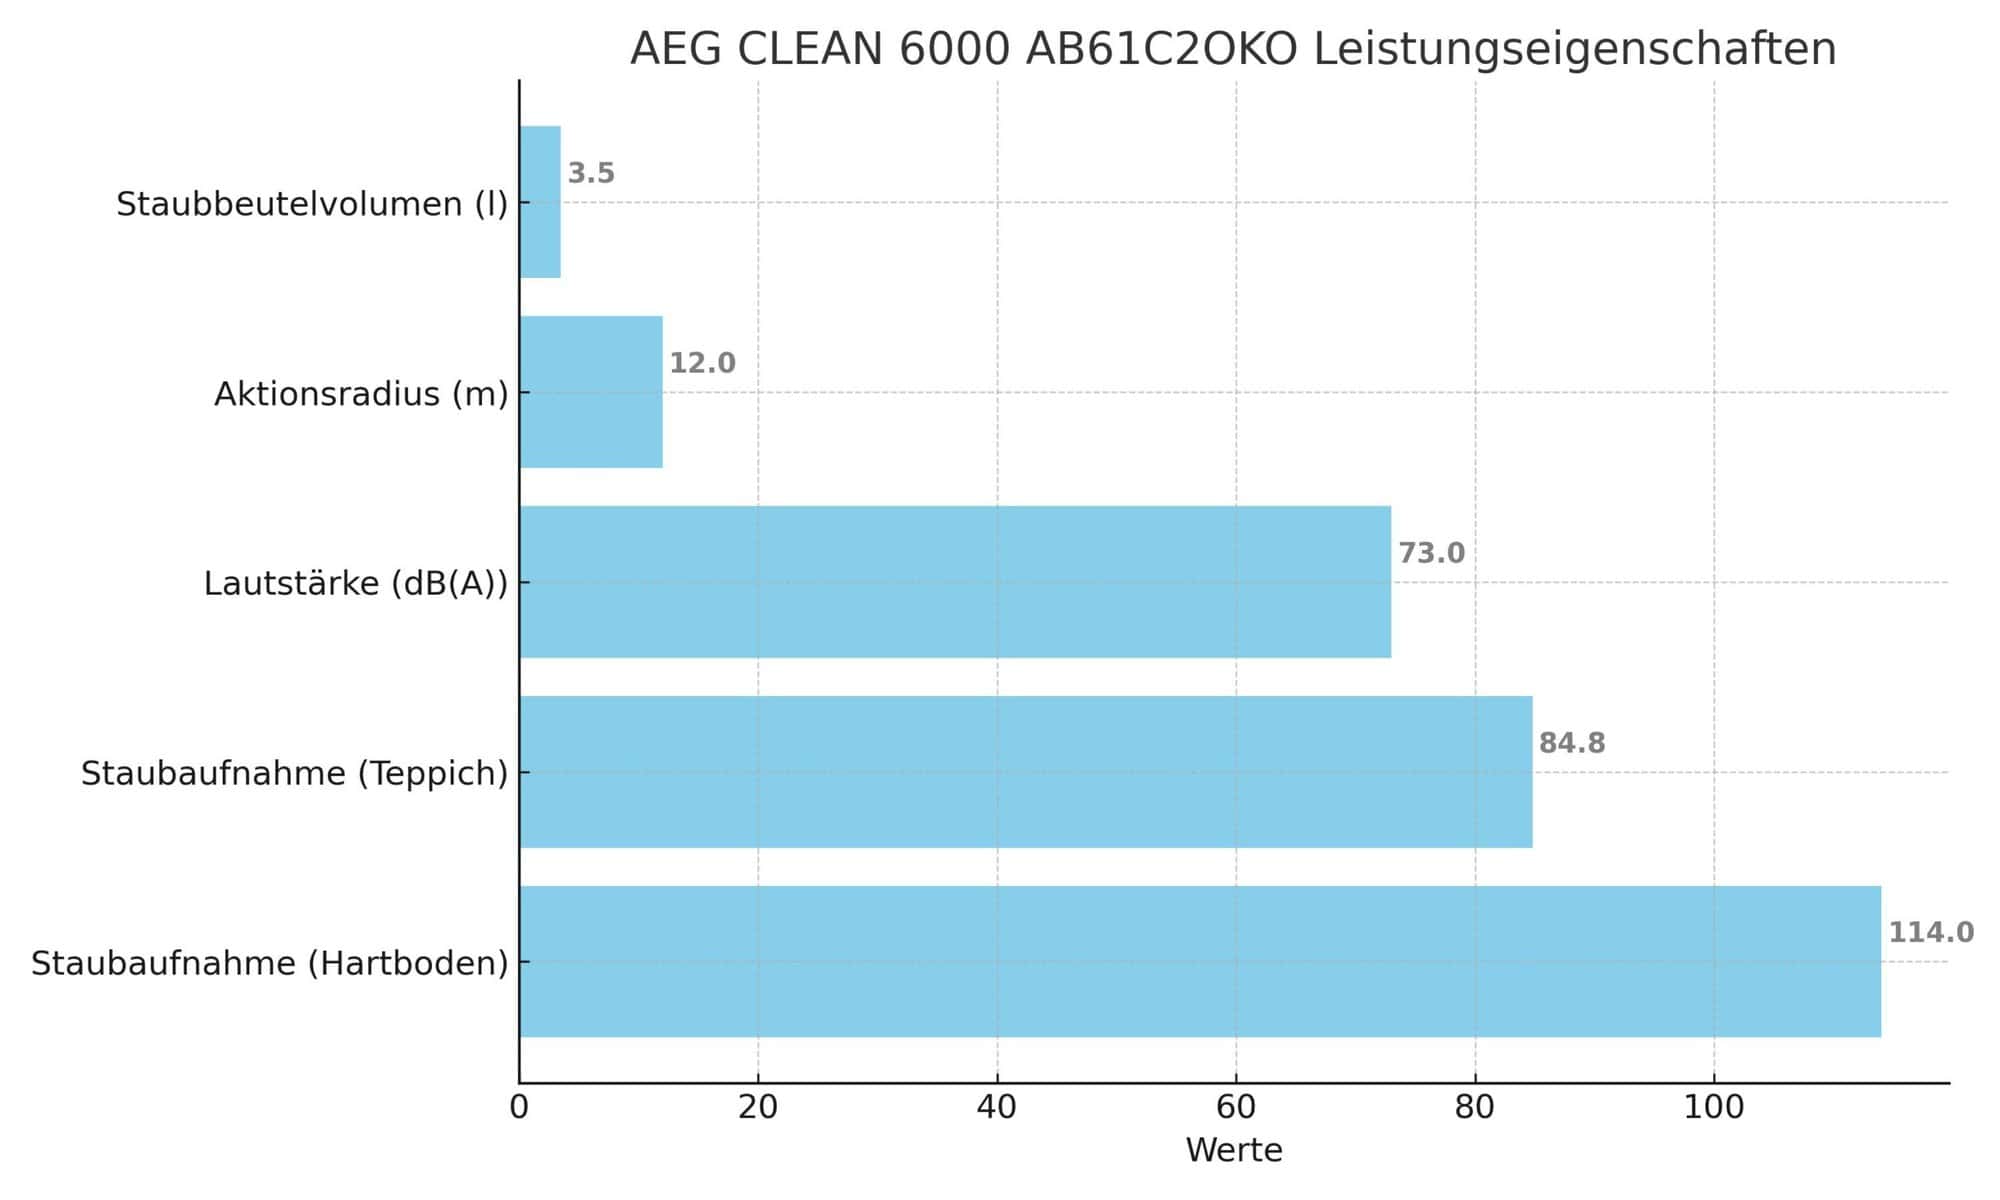 Leistungseigenschaften des AEG CLEAN 6000 AB61C2OKO 